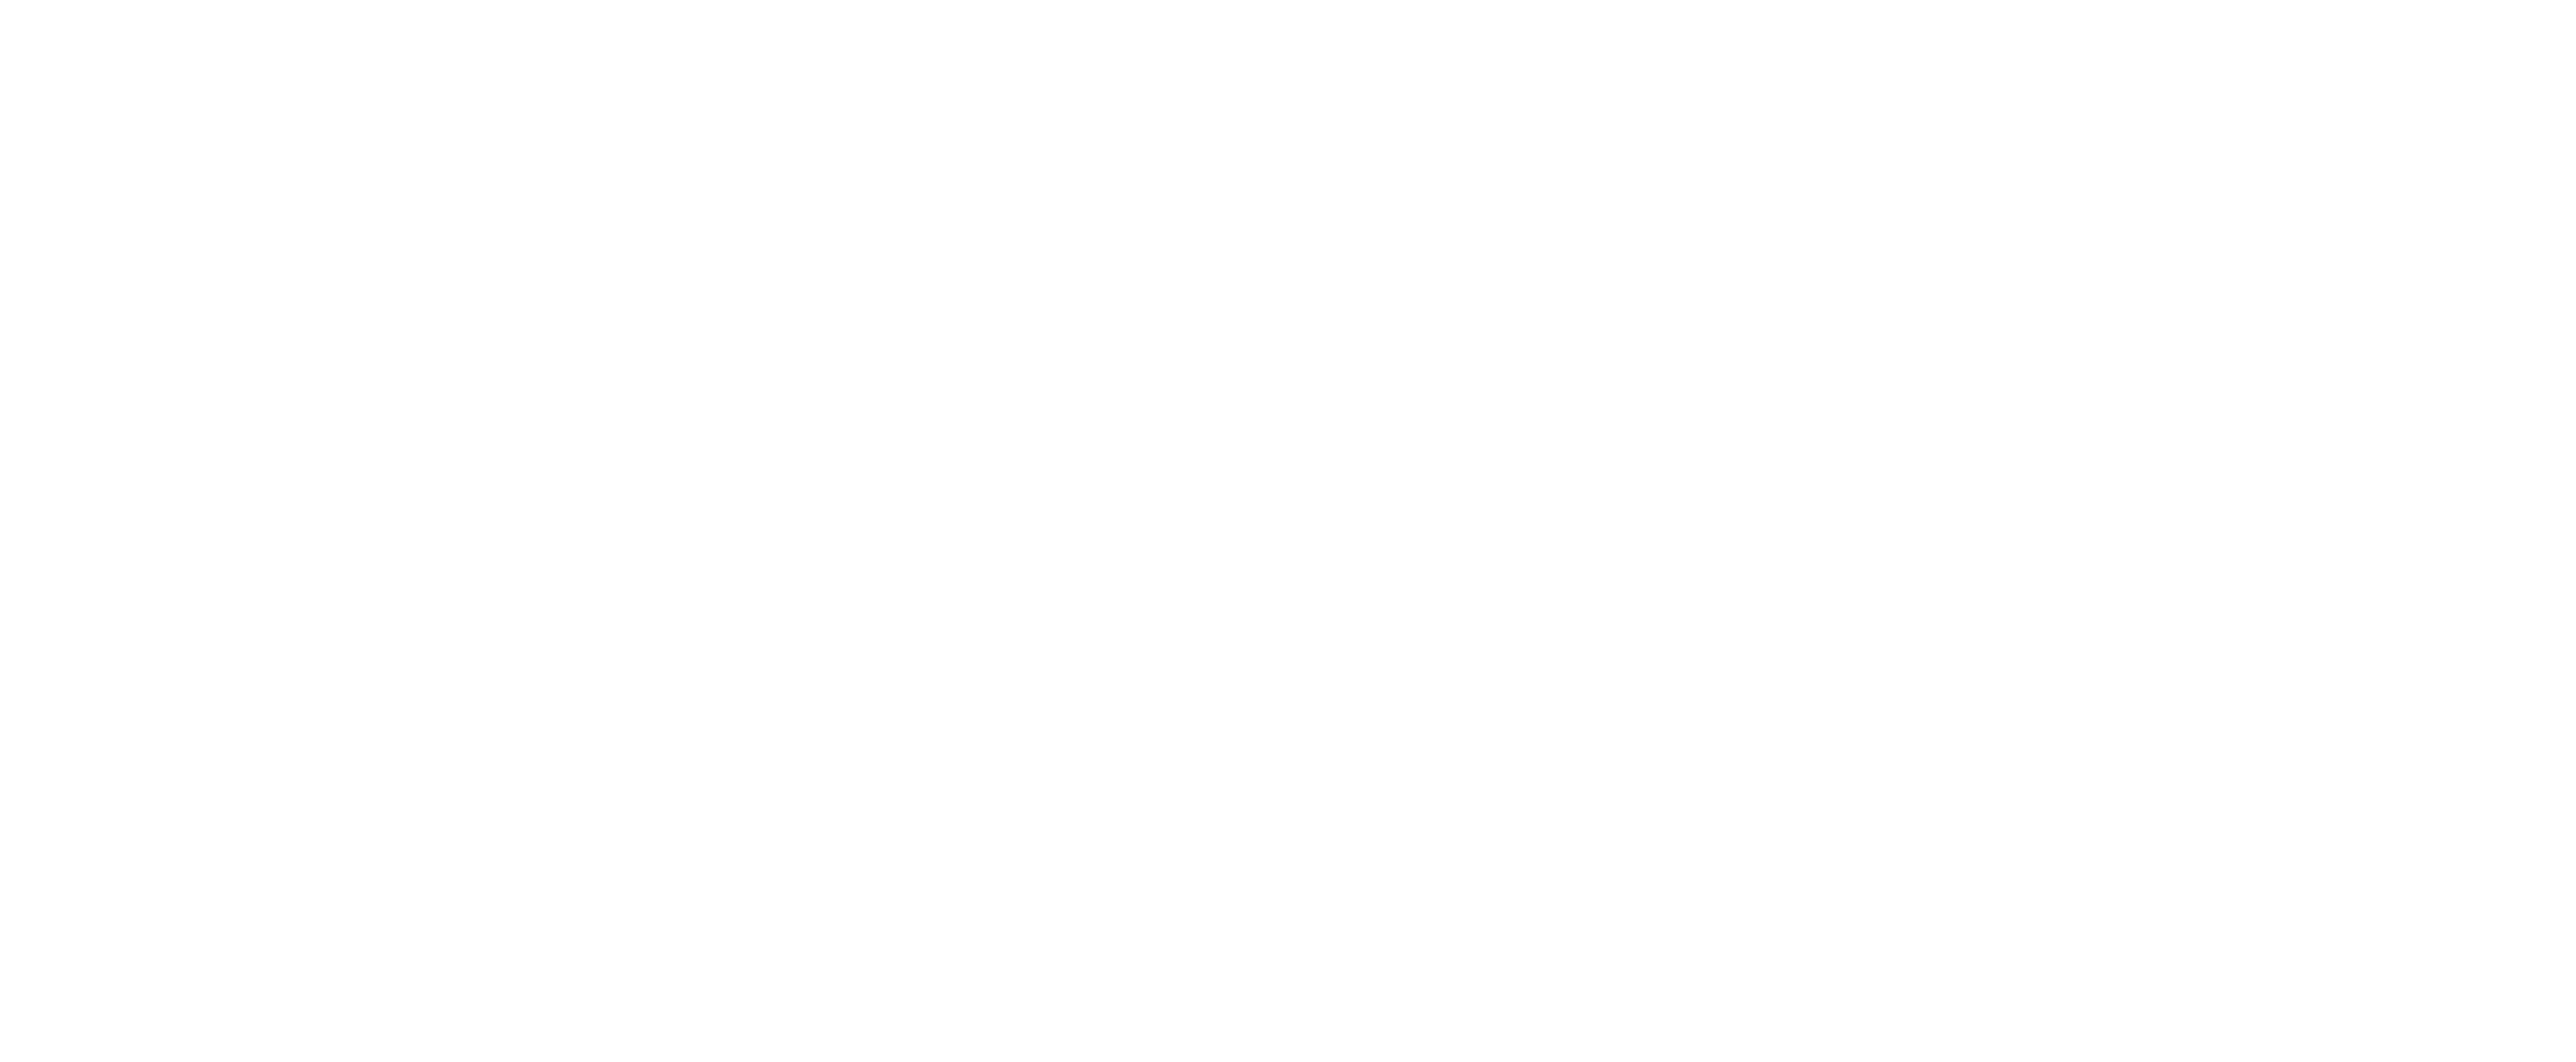 Open Metier